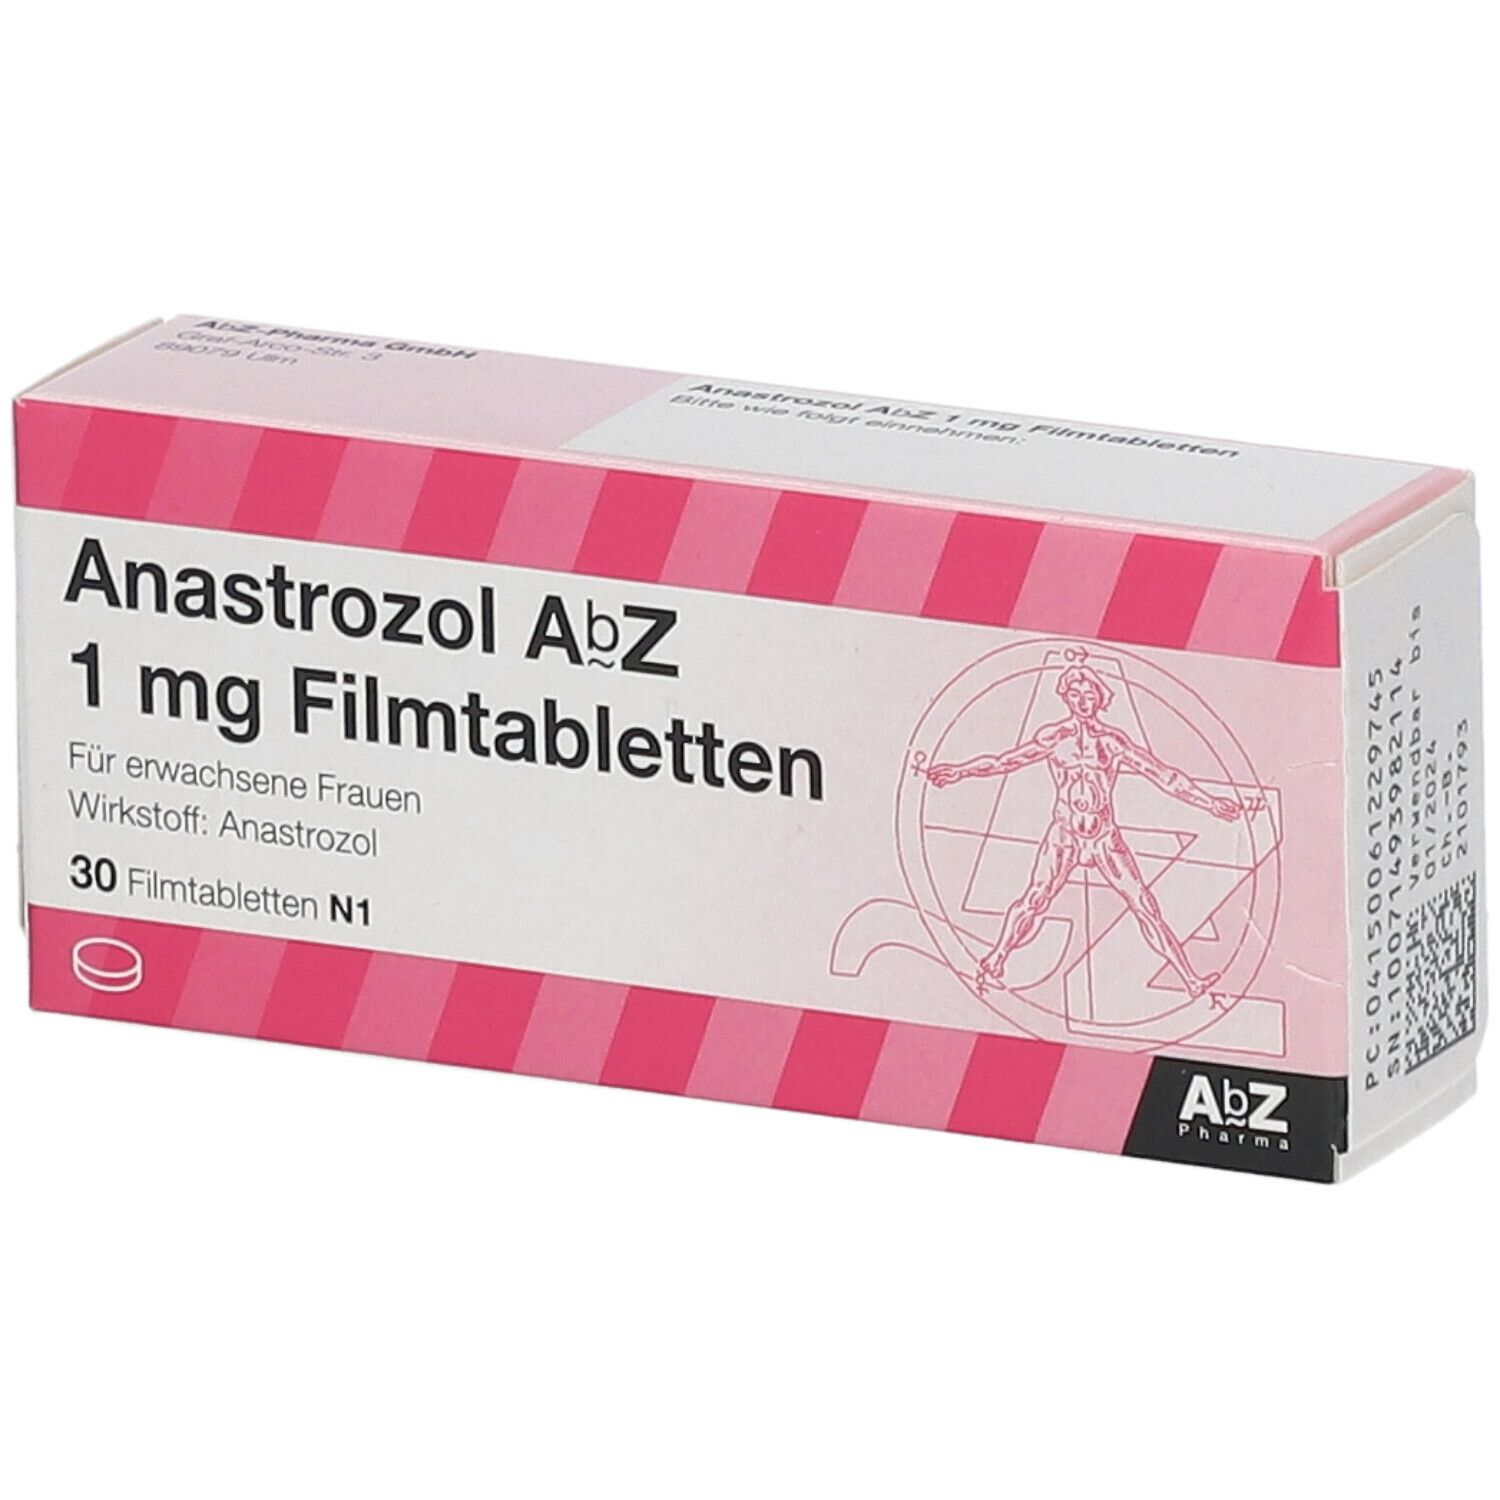 Anastrozol AbZ 1 mg Filmtabletten